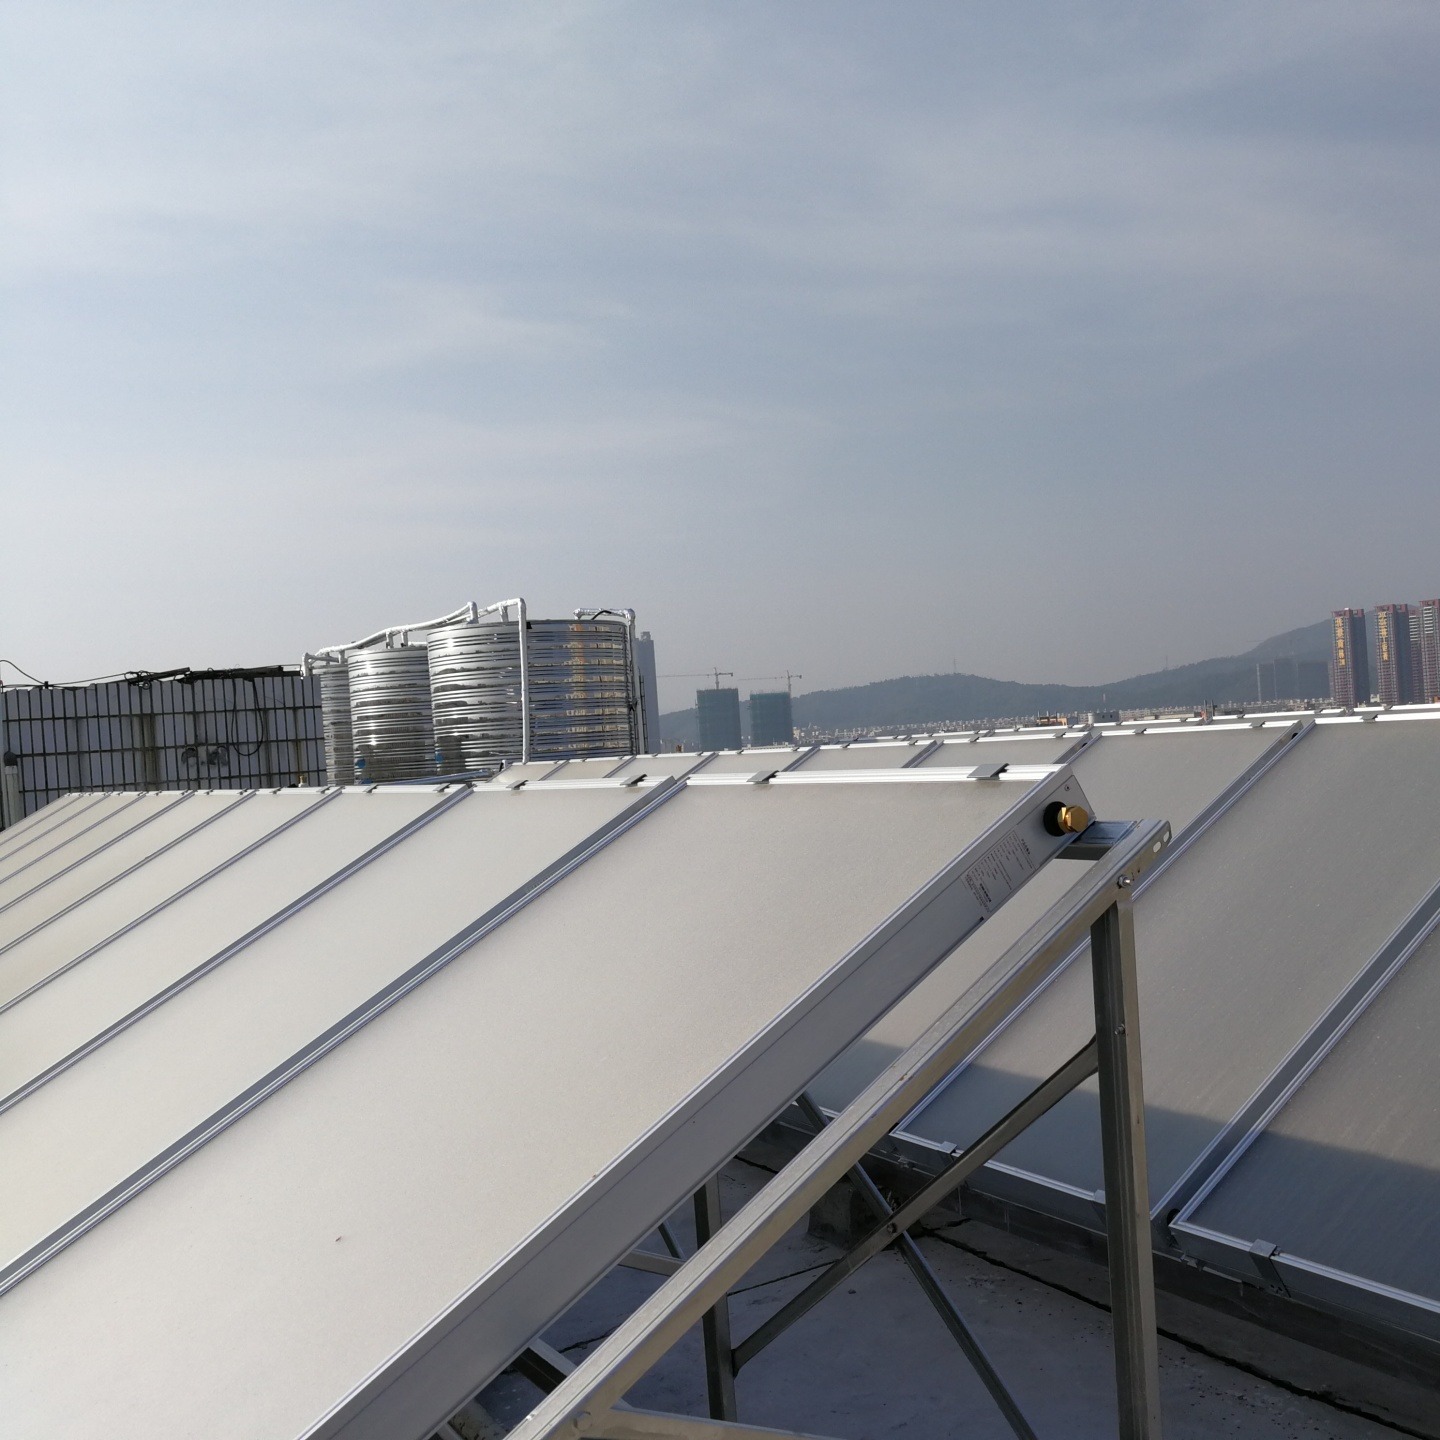 恺阳 空能热水器结合太阳能集热工程系统 深圳酒店学校热水 平板真空管太阳能热水器